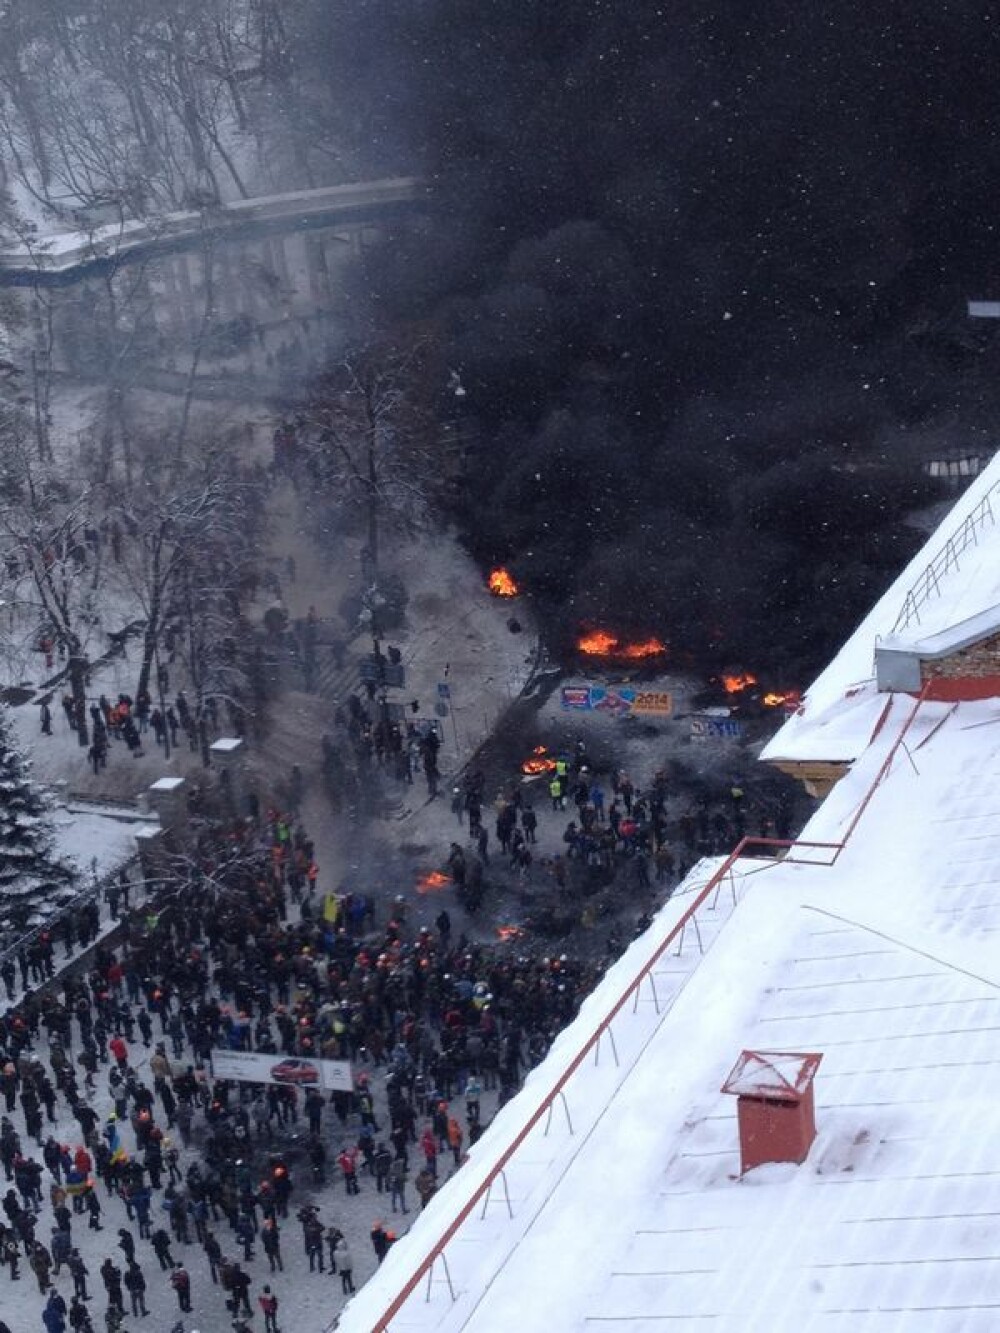 Criza din Ucraina. Mii de protestatari au luat cu asalt aseara o cladire ocupata de peste 200 de forte speciale - Imaginea 2